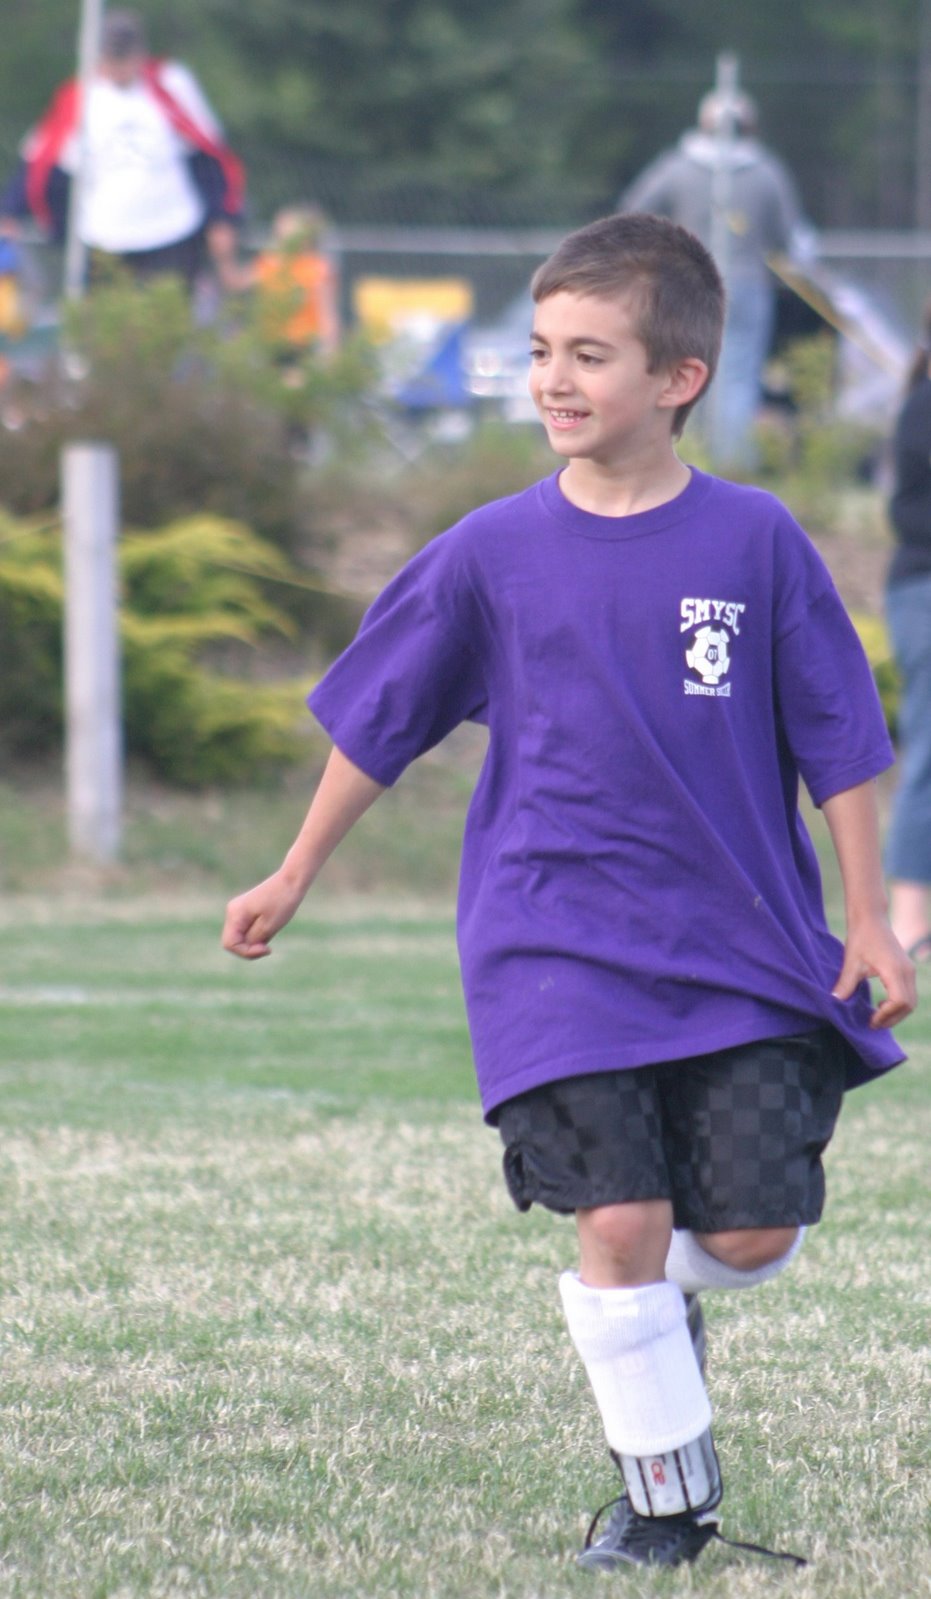 [josiah+playing+soccer.jpg]